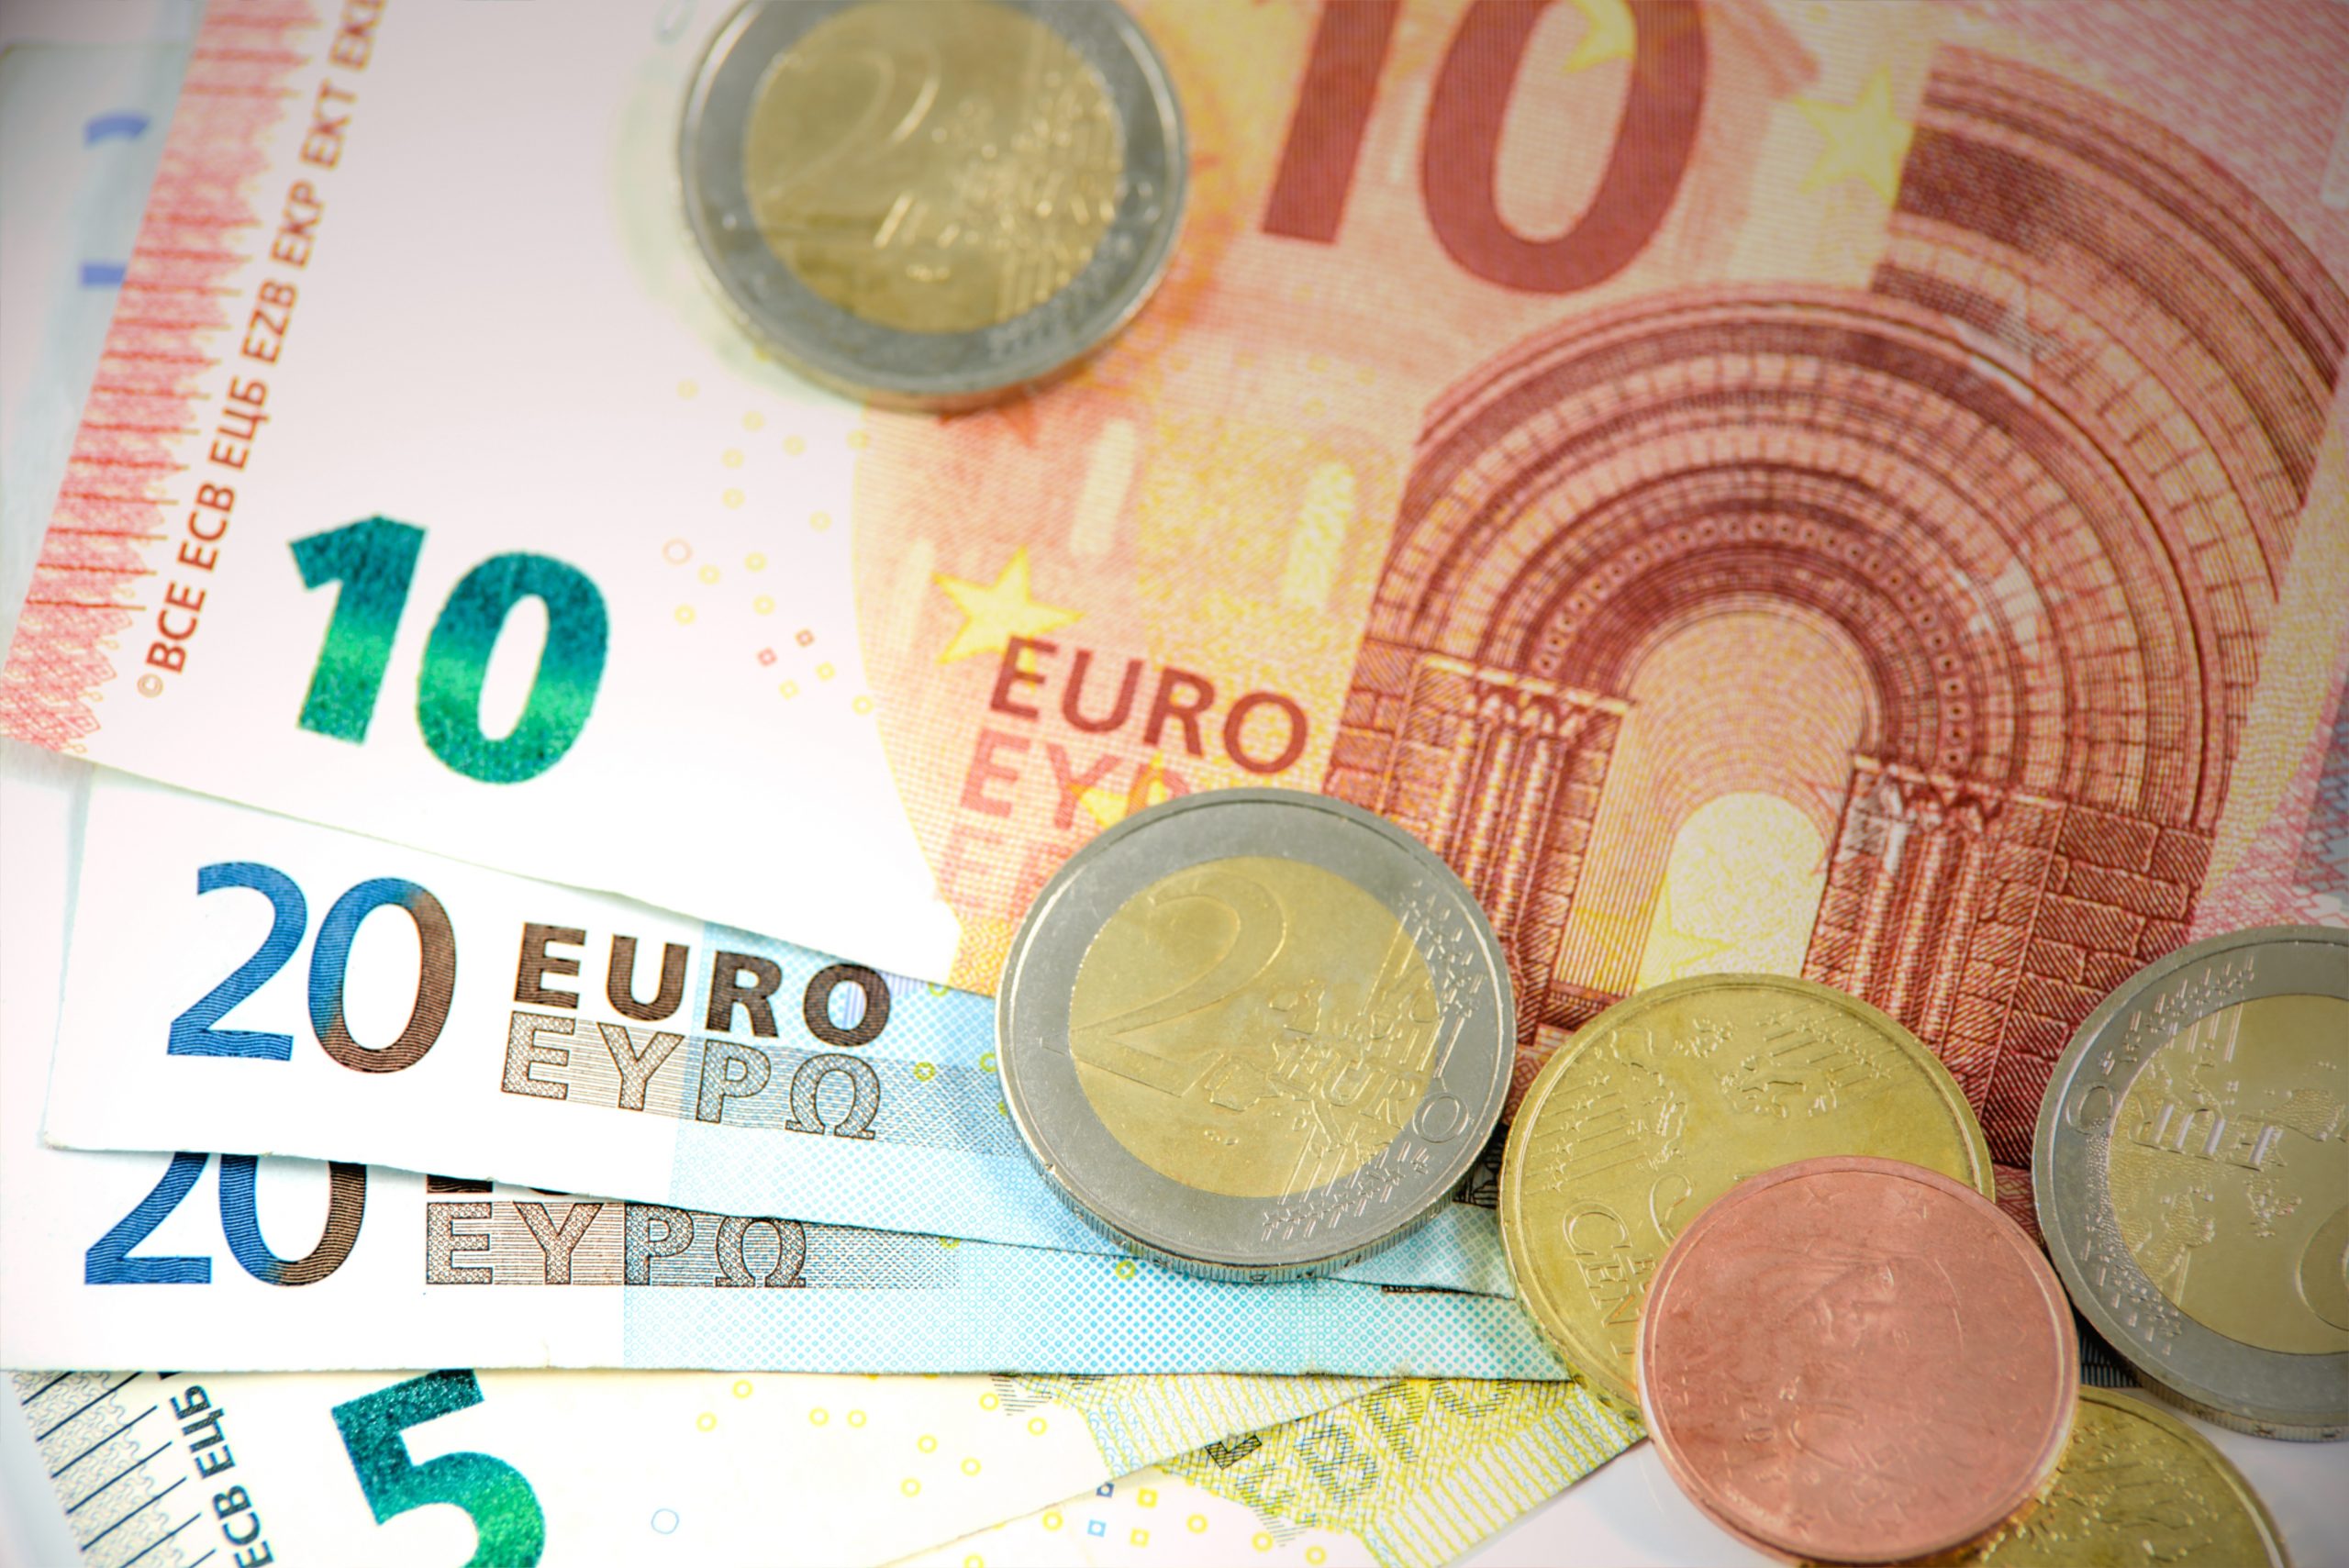 20 Jahre Euro – Erfolg in unruhigen Zeiten